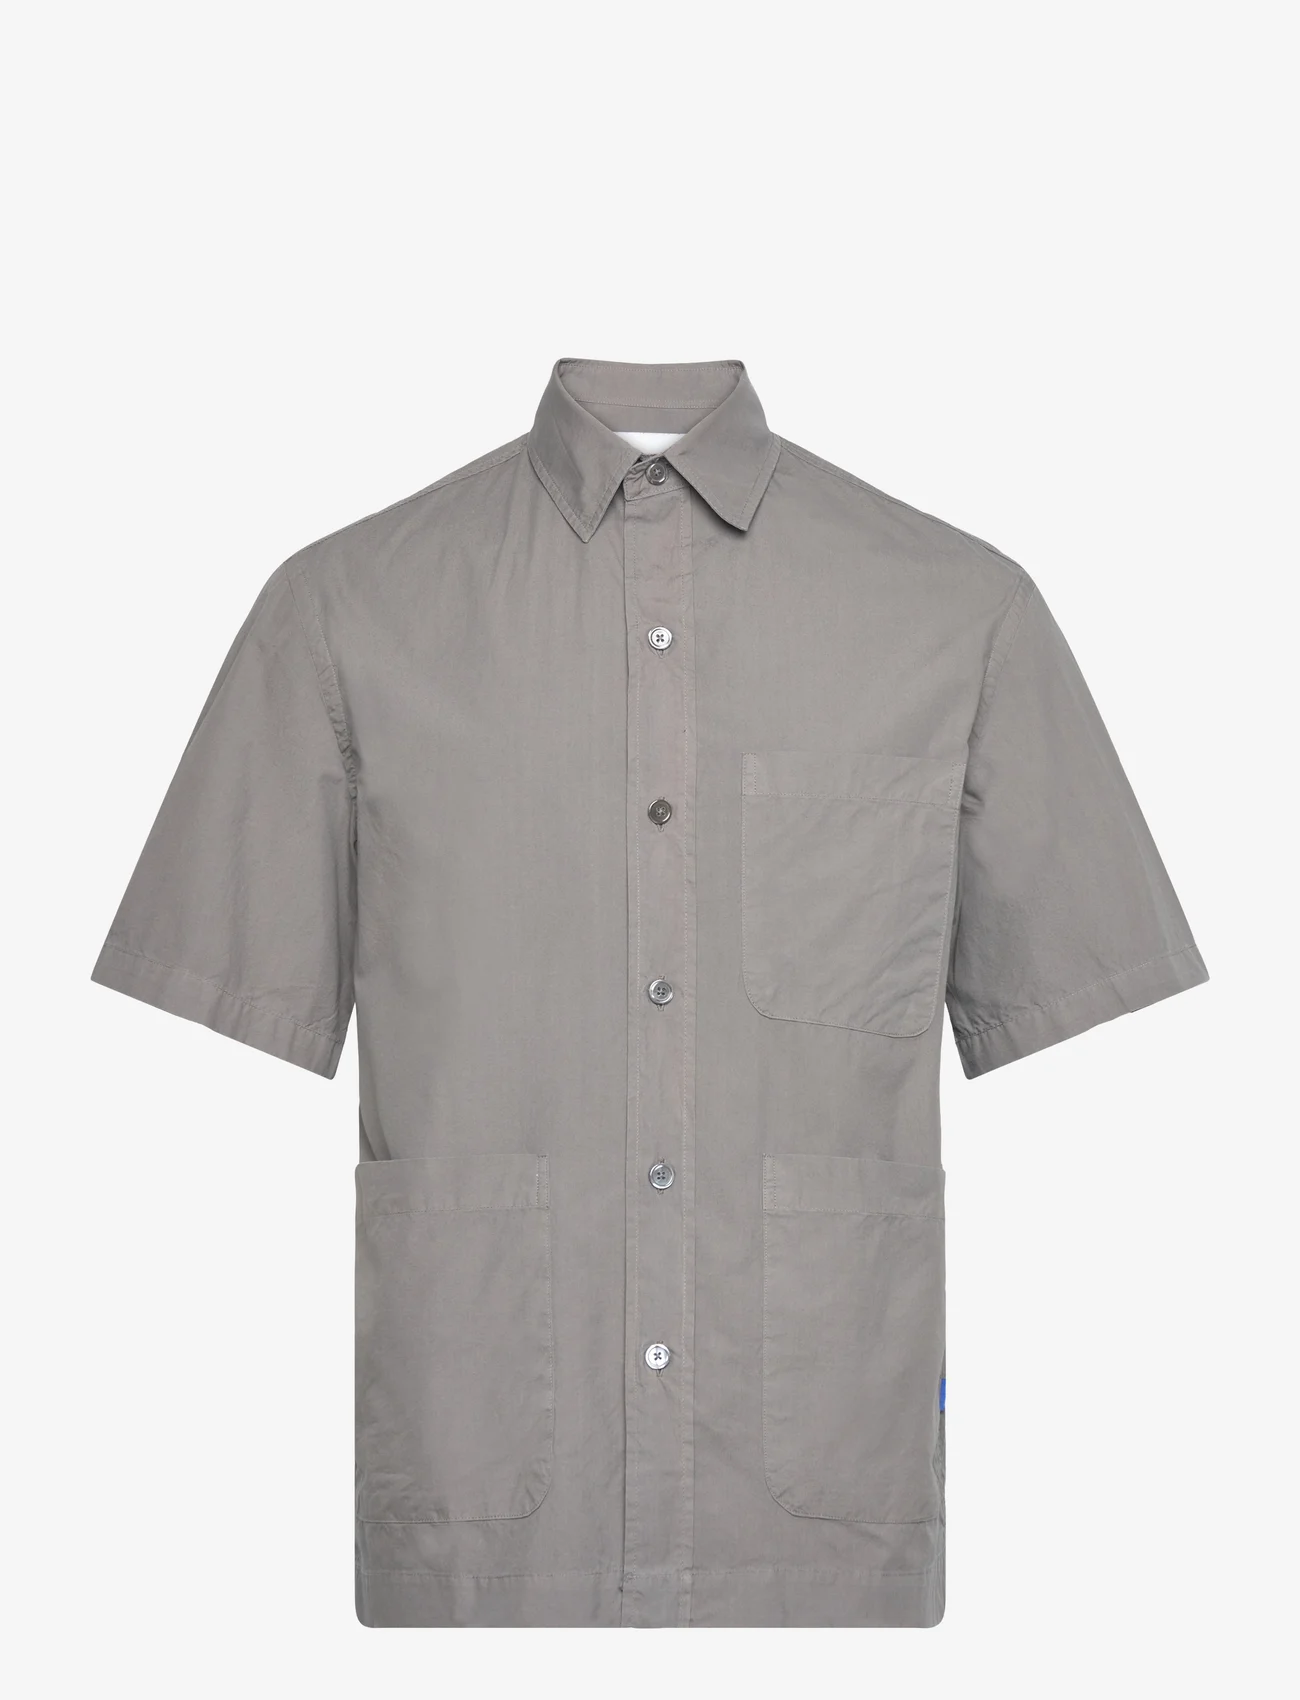 Garment Project - Short Sleeved Shirt - peruskauluspaidat - 445 charcoal - 0